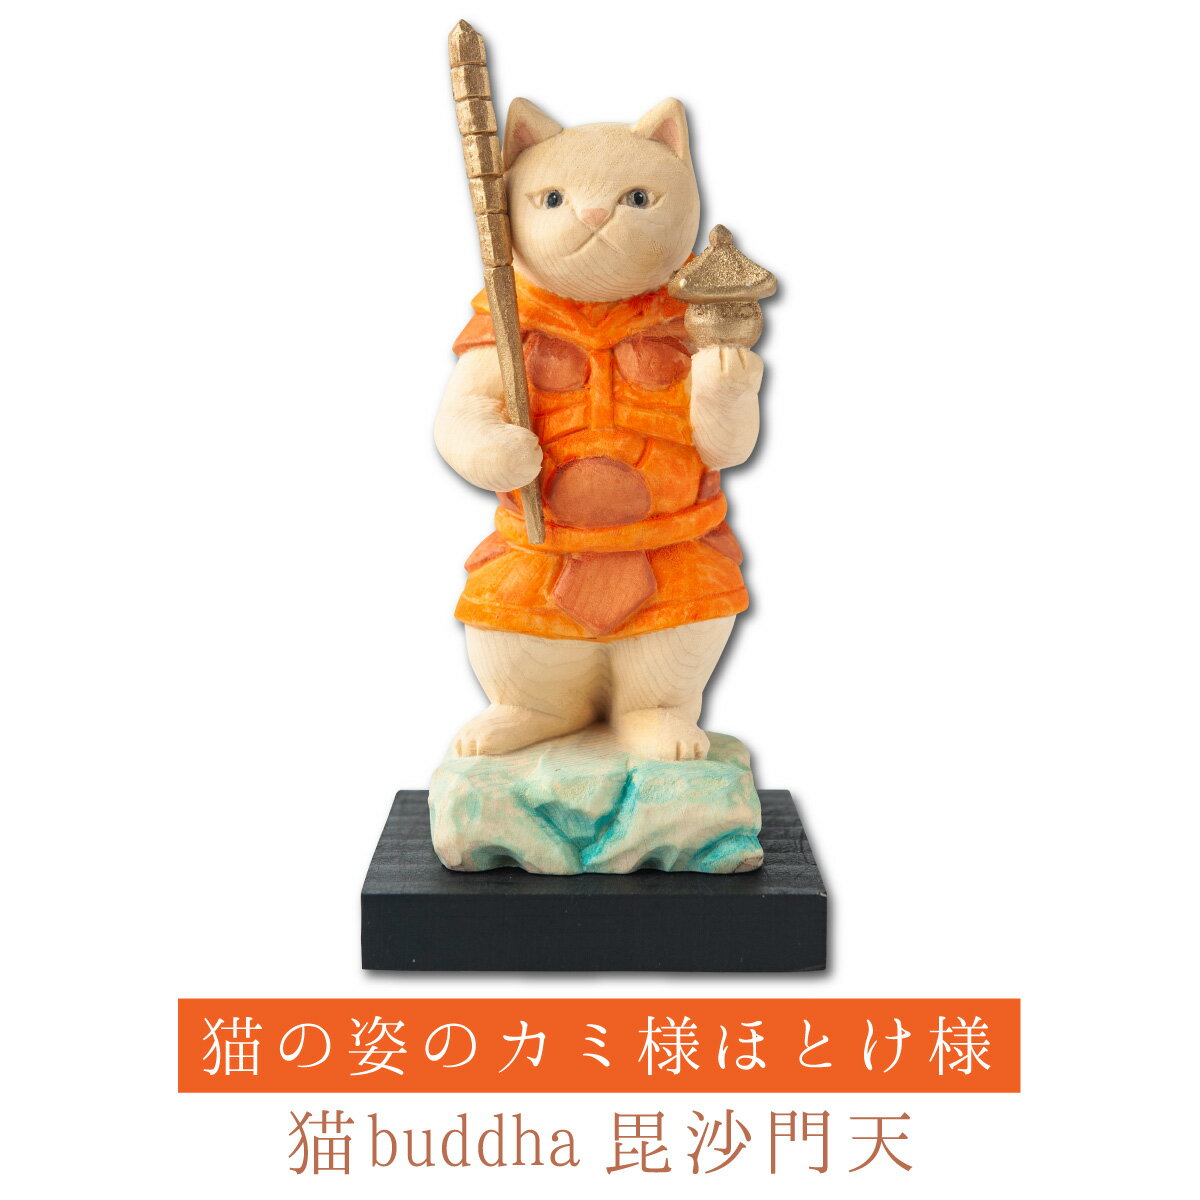 猫buddha 毘沙門天［勝負にカツにゃ！］ ≫ にゃんブッダ！癒される猫姿の神さま仏さま。仏屋さかい原型、監修。すべて木彫りで作っちゃいました♪ 仏像 木彫り 置物 猫 ねこ